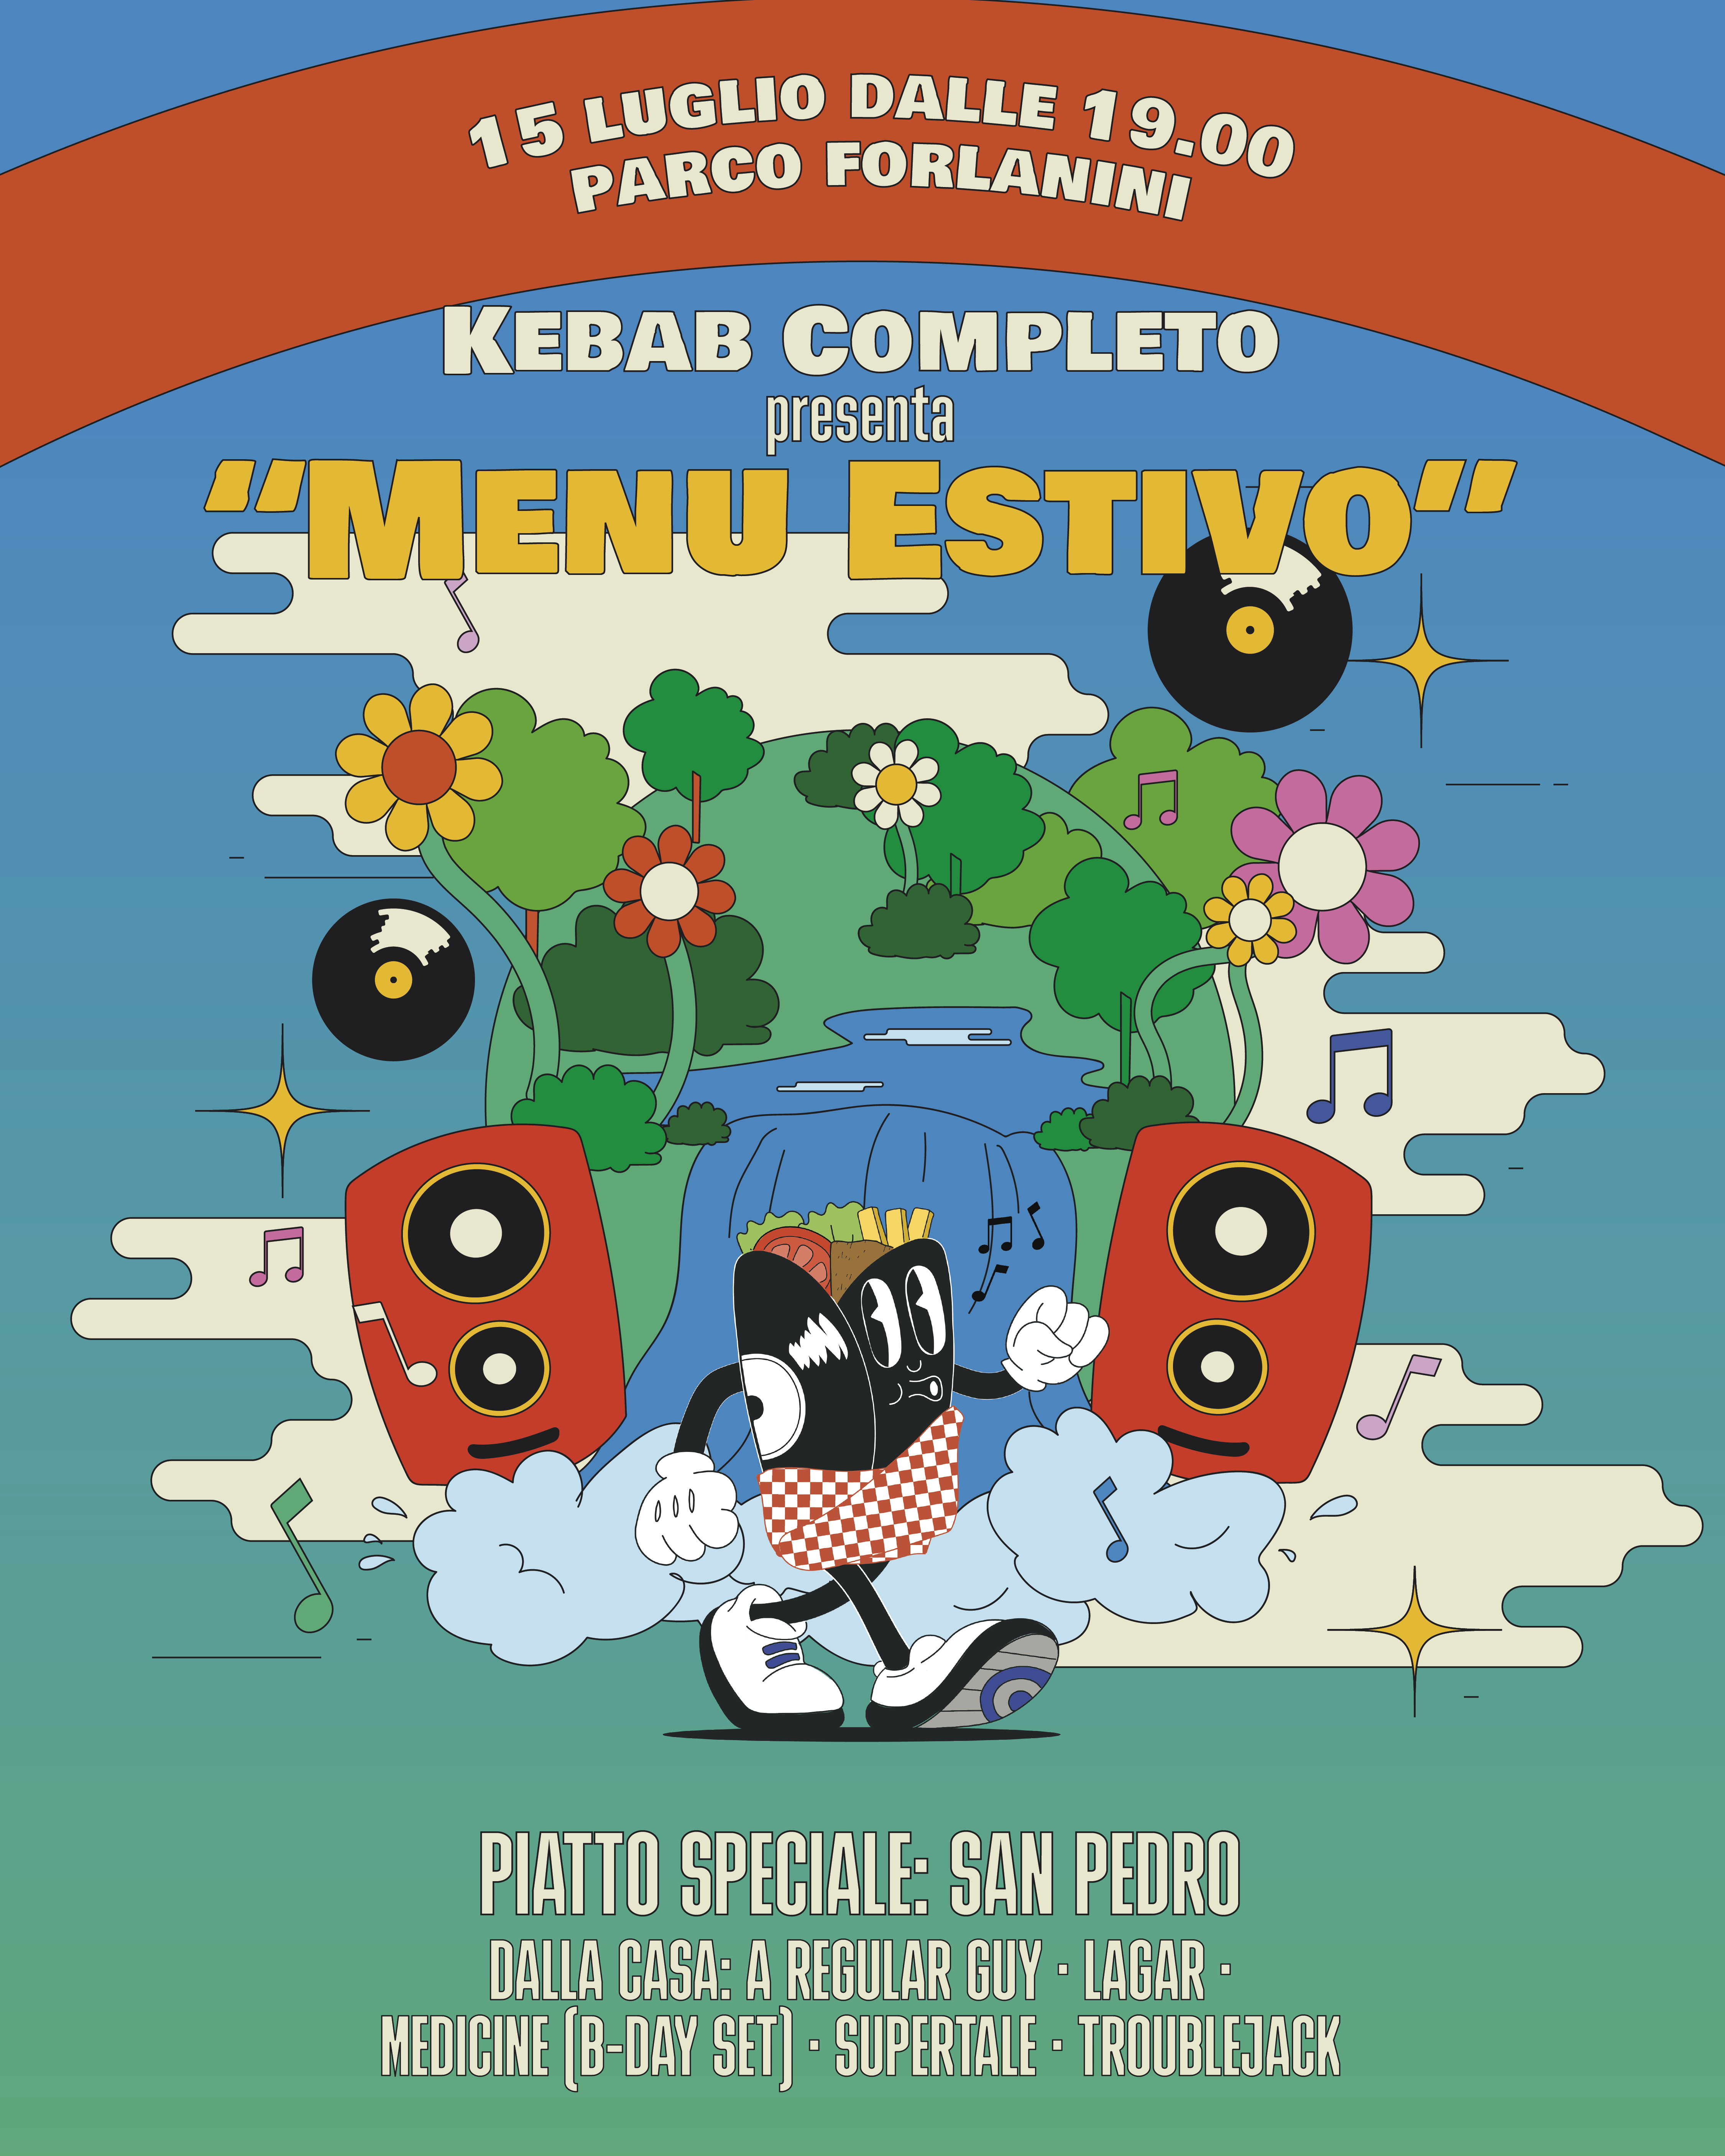 KEBAB COMPLETO presenta 'Menu Estivo' - フライヤー表